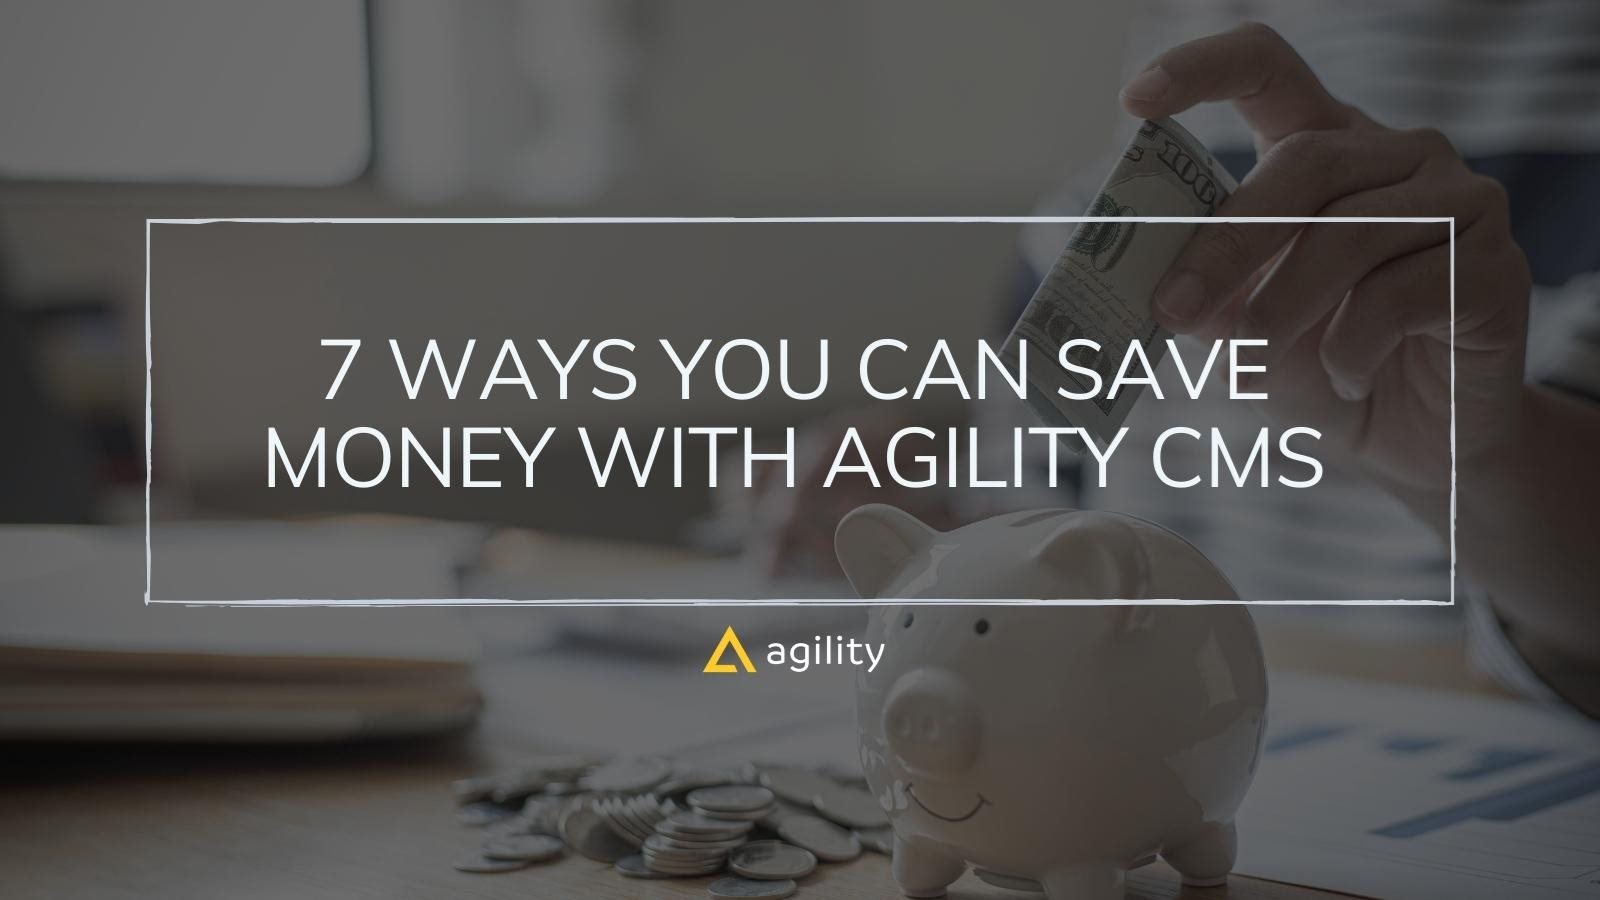 Save Money With Agility CMS on agilitycms.com